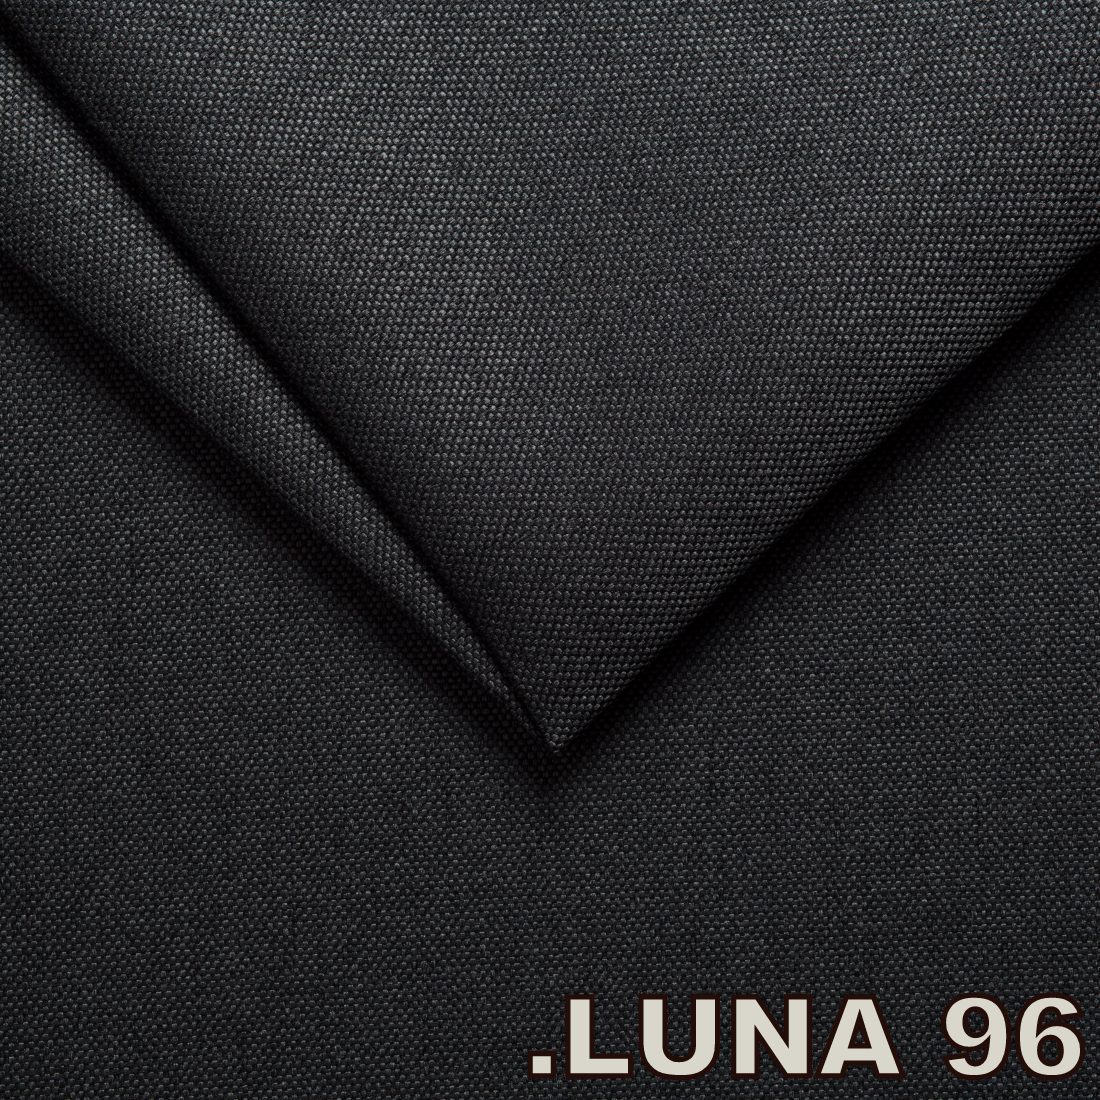 Luna 96 Dk. Grey (Tissu Tweed structure fine)